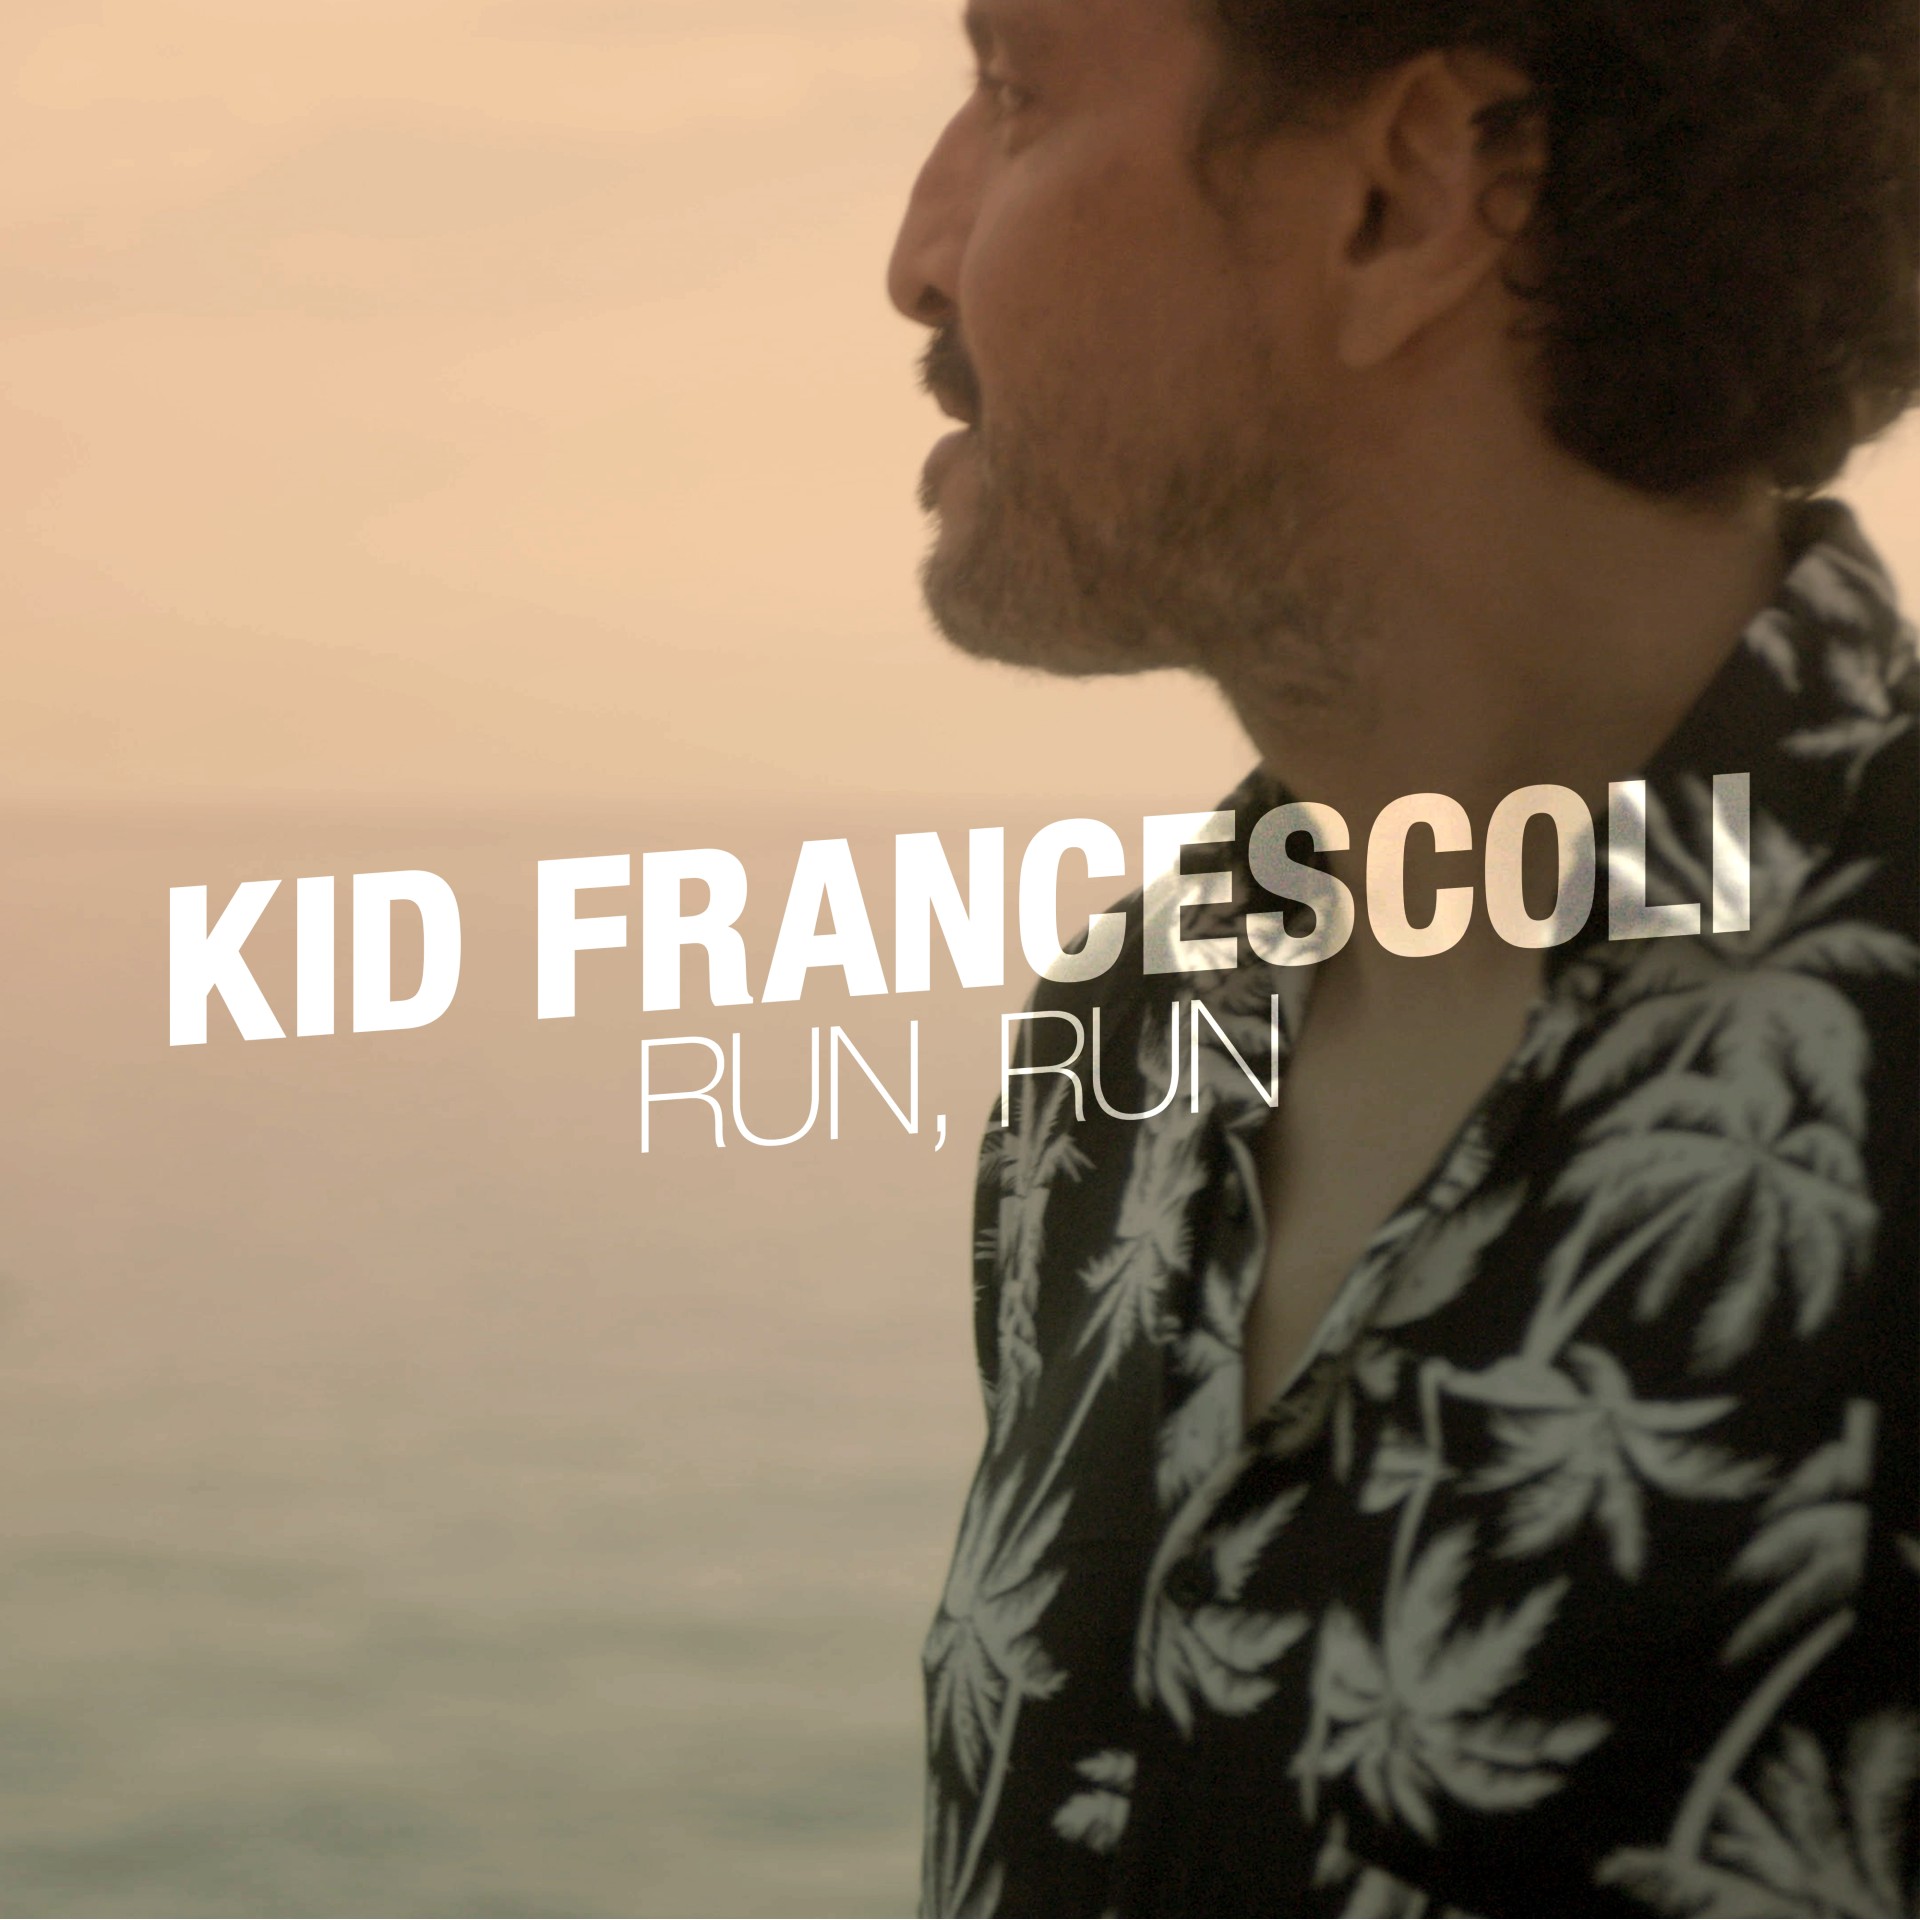 Kid Francescoli “Run, Run” single artwork